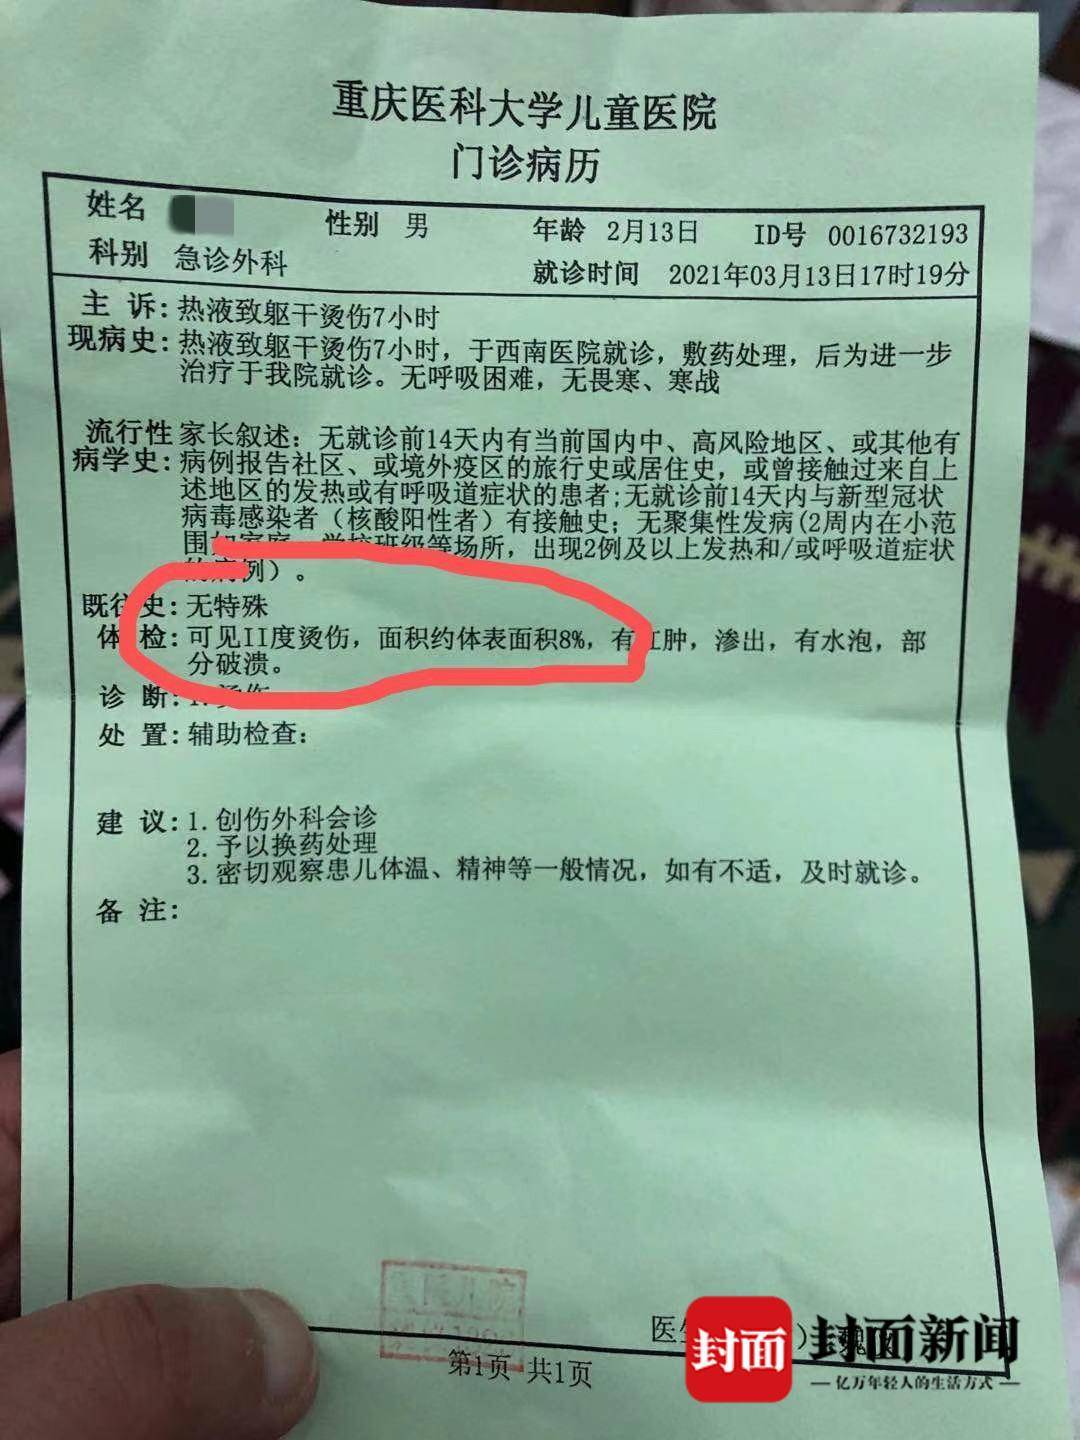 14点多钟,距被烫伤4小时后,吴女士一行人赶到重庆市西南医院